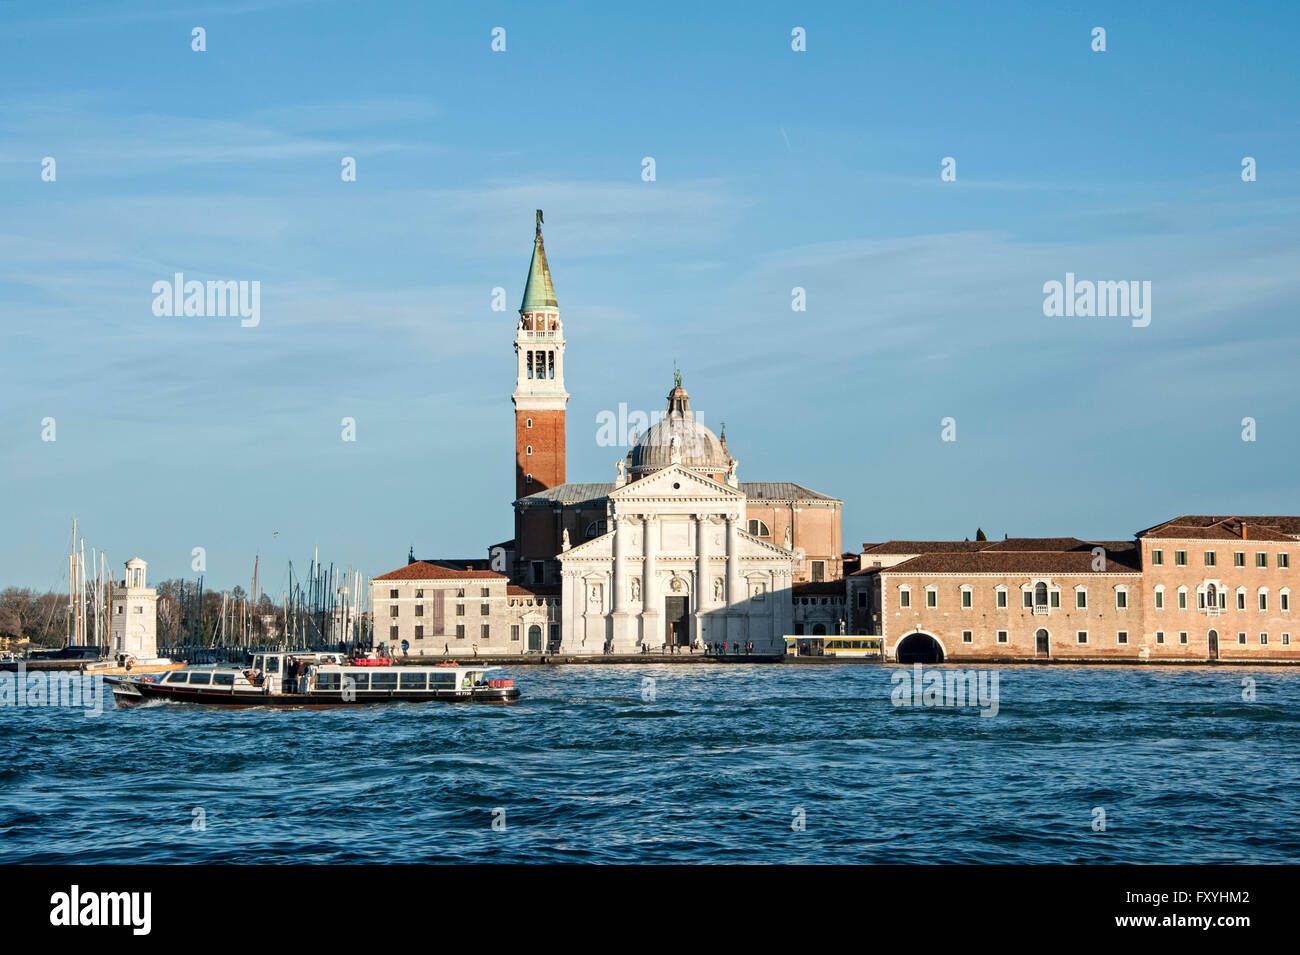 View from Zattere to San Giorgio Maggiore, Venice, Veneto, Italy Stock Photo